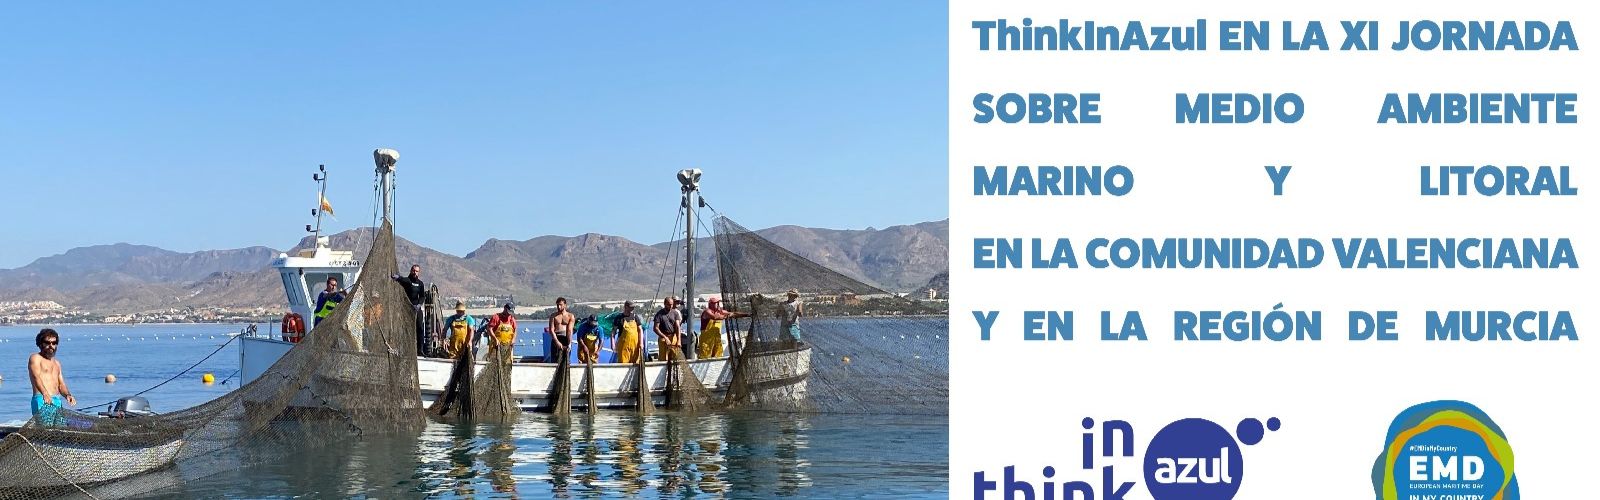 El proyecto ThinkInAzul organiza un encuentro entre expertos en ciencias marinas de la Región y la Comunidad Valenciana